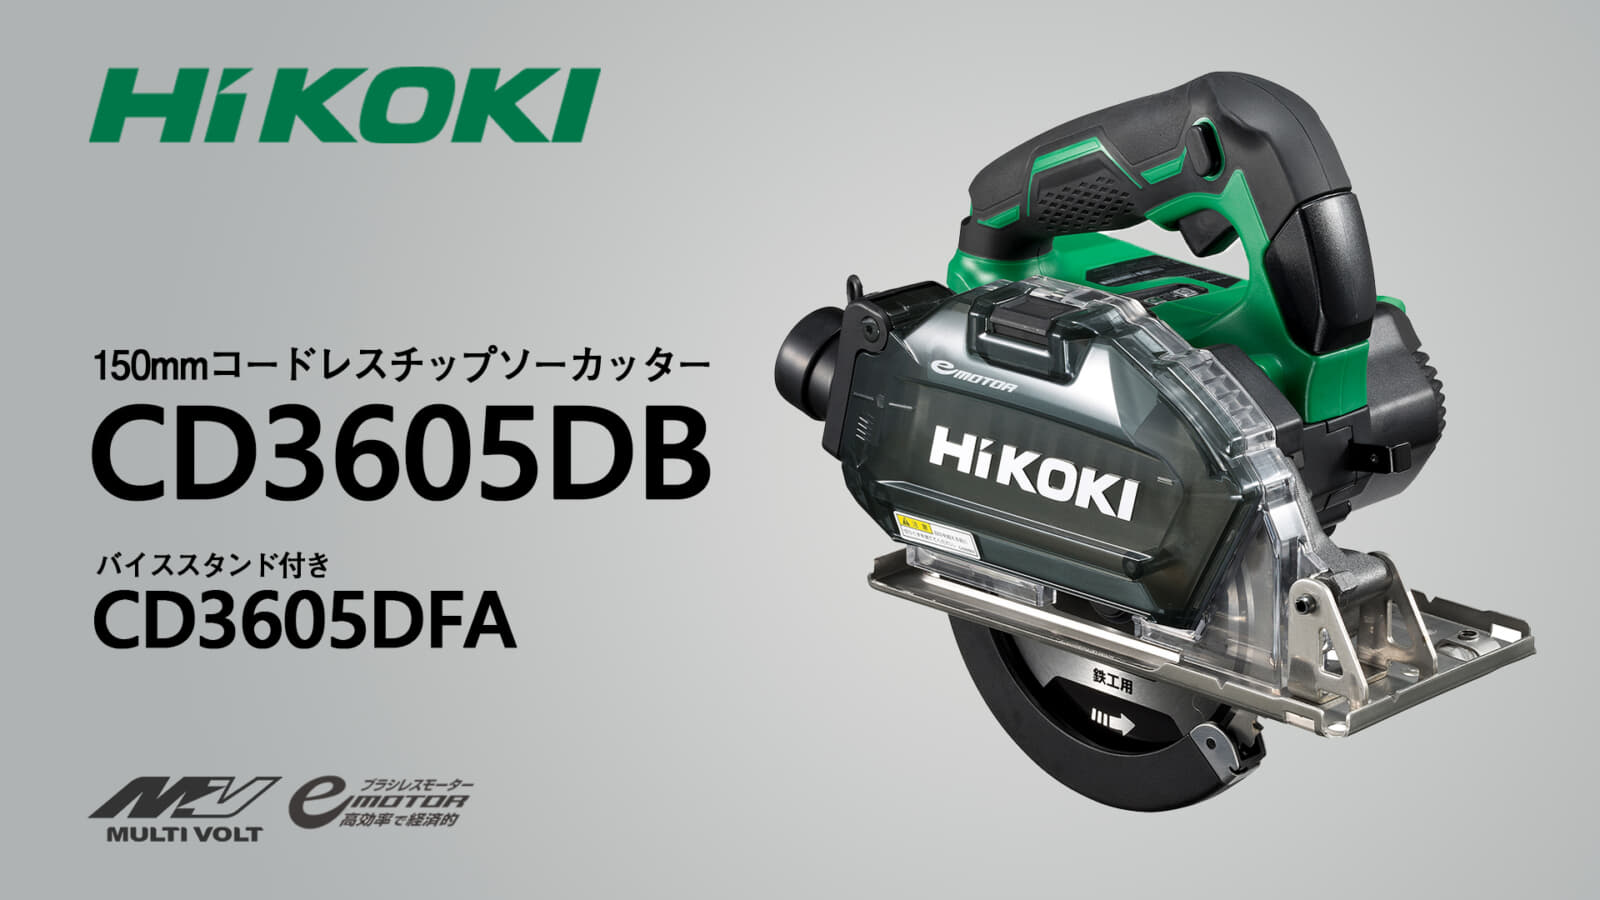 HiKOKI CD3605DB コードレスチップソーカッターを発売、150mm径チップソーモデル